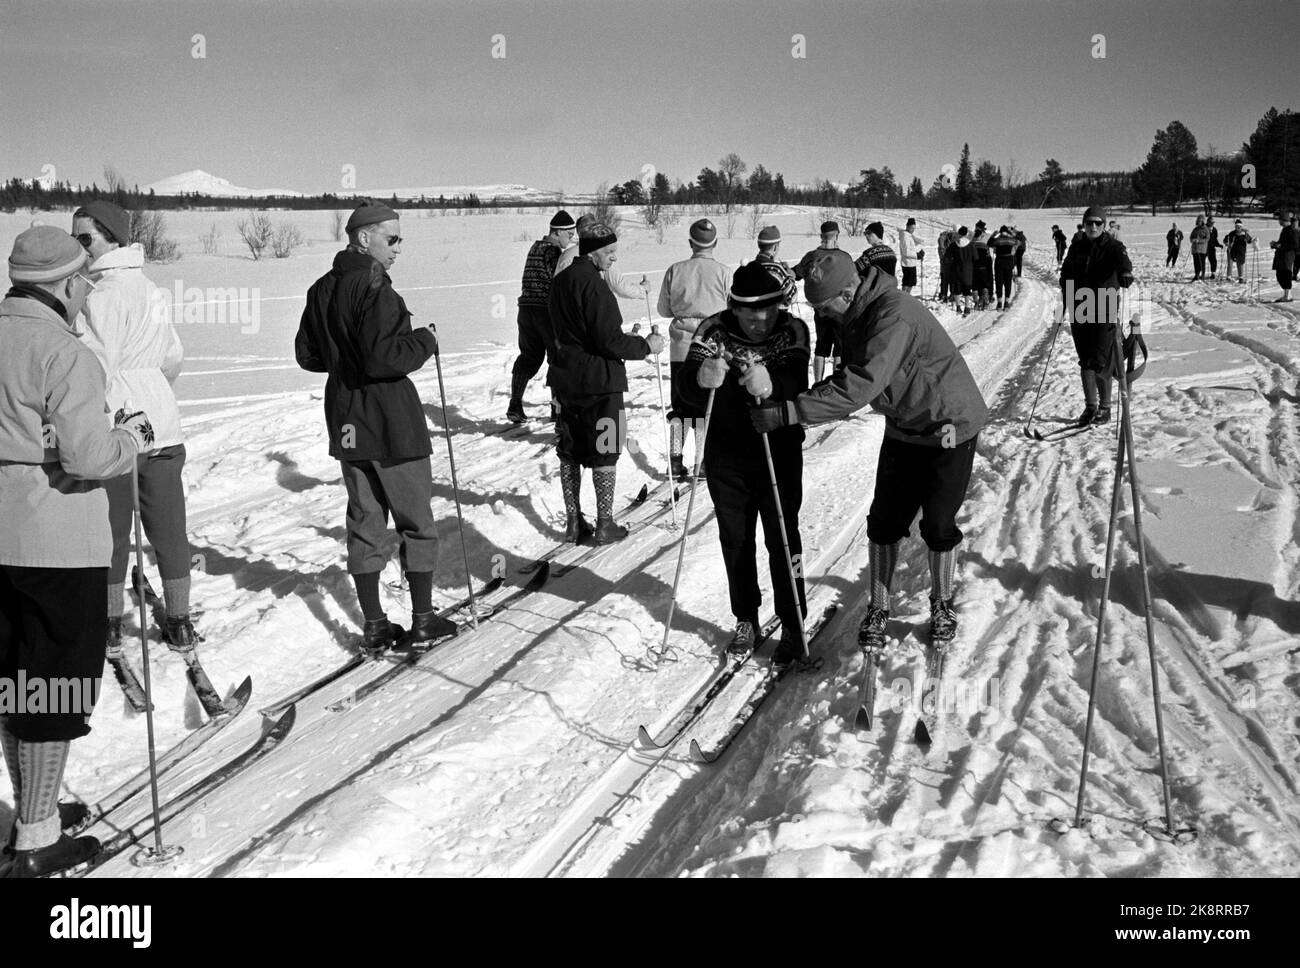 Beitostølen 19620323 unter der Leitung von Erling Stordahl und Håkon Brusveen finden in Beitostølen erstmals Skikurse für Blinde statt. Hier weist Brusveen einen der Teilnehmer auf den Kurs an. Foto: Aaserud / Aktuell / NTB Stockfoto